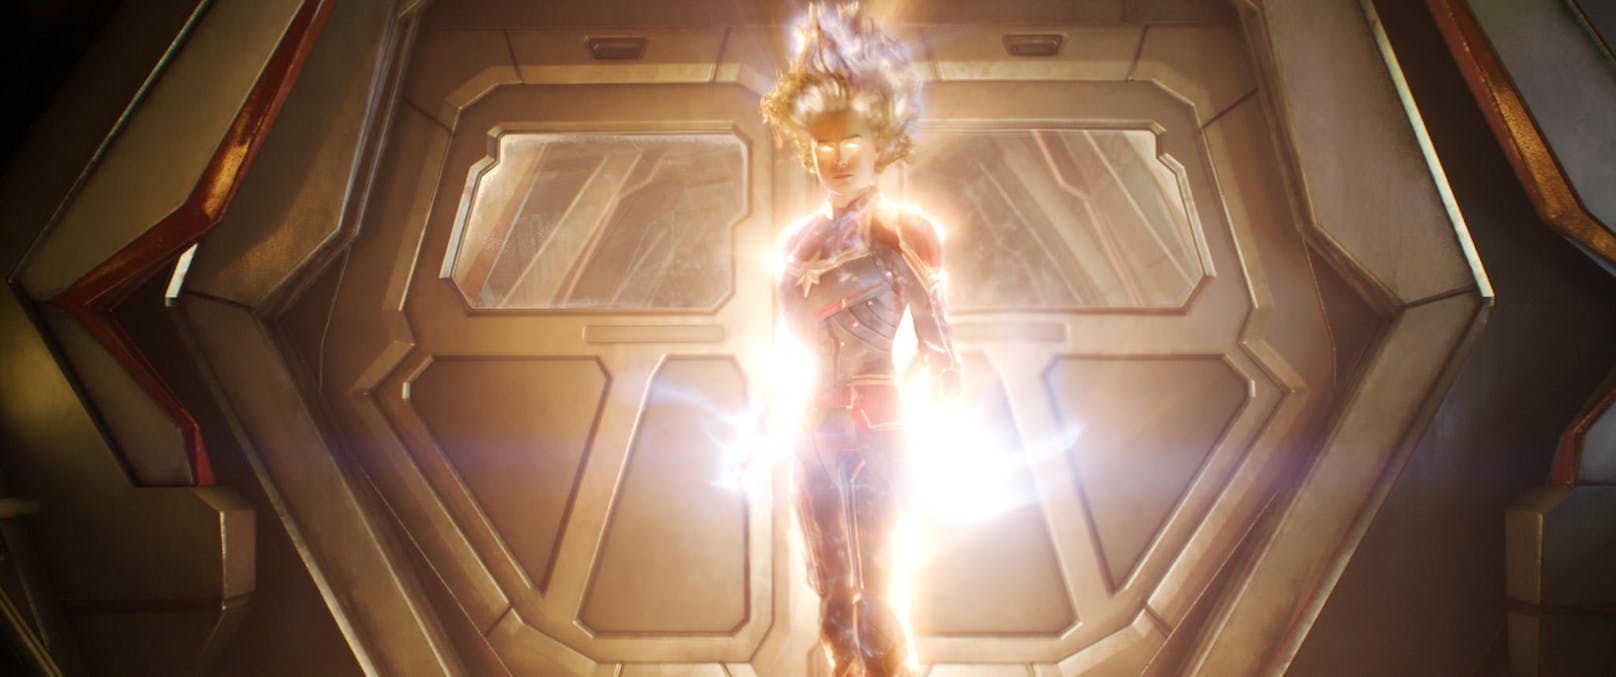 Als zwischen zwei Alien-Rassen ein Krieg um die Erde entbrennt, wird die ehemalige Kampfpilotin  Carol Danvers (Brie Larson) zu Captain Marvel, einer der stärksten Superheldinnen des gesamten Universums. <a href="https://www.heute.at/s/captain-marvel-review-rezension-filmkritik-48148212">Hier geht's zur "Captain Marvel"-Review</a>